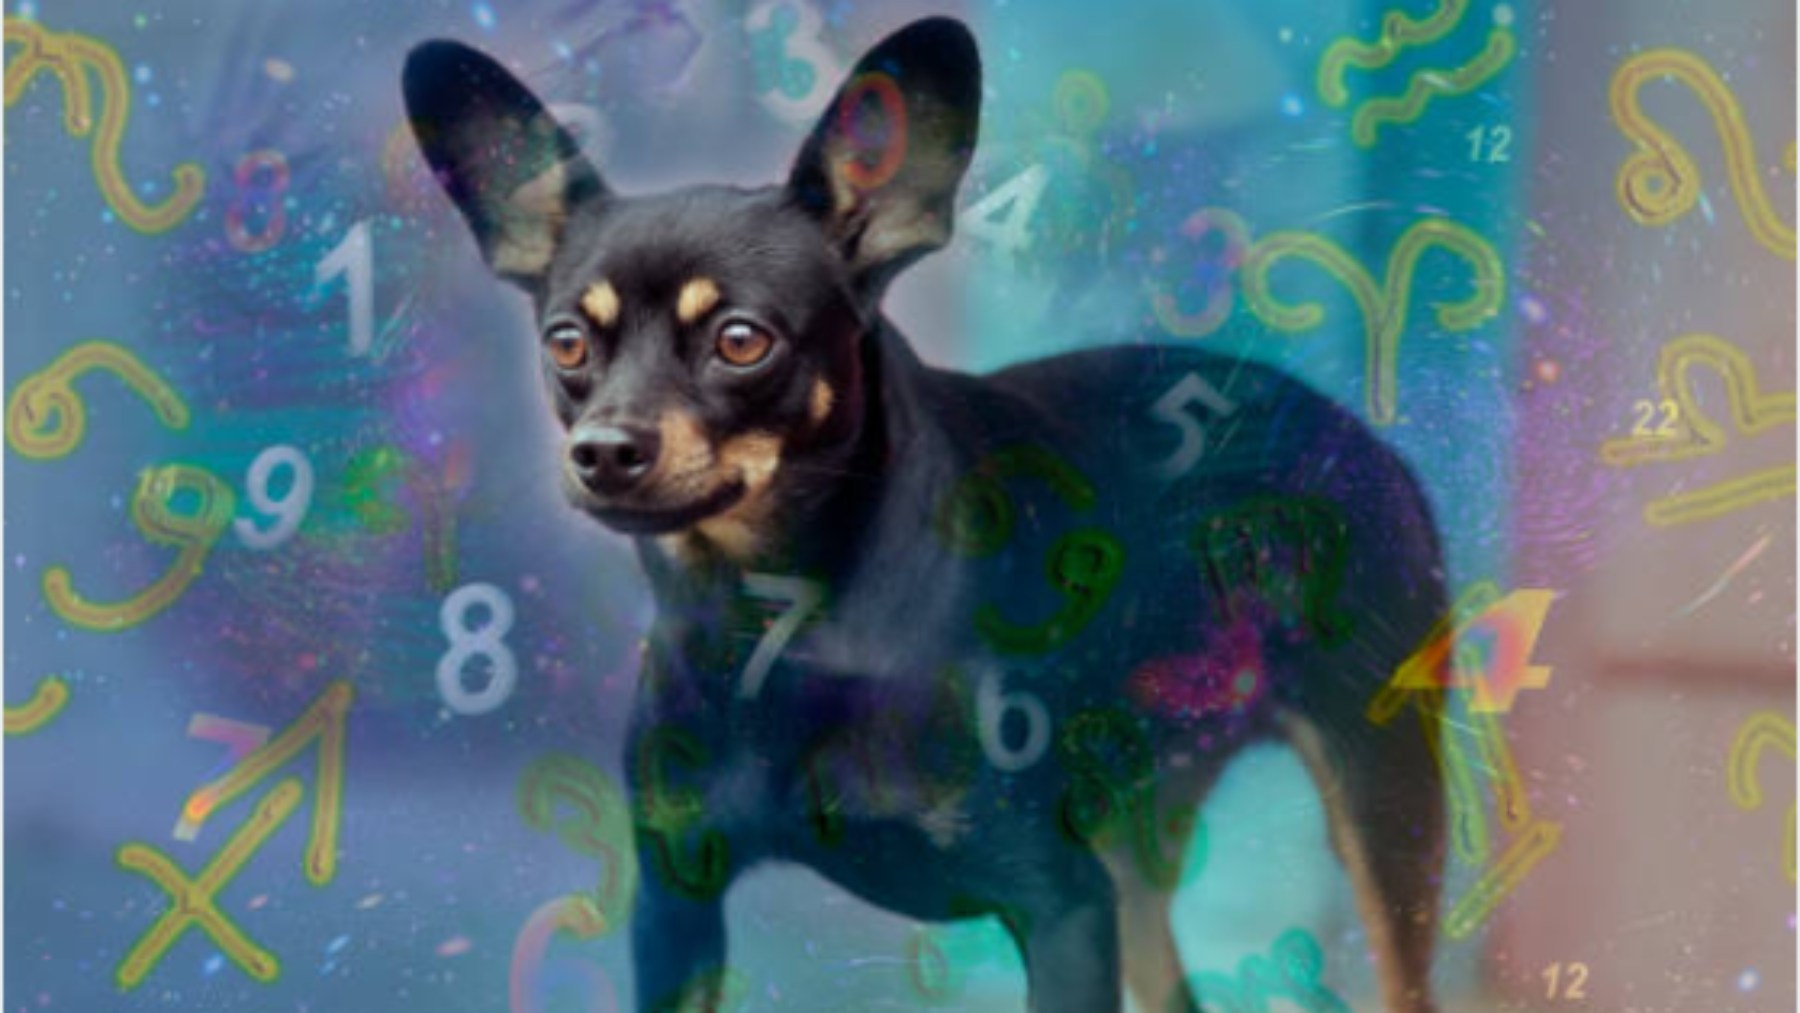 Las razas de perros que representan cada signo del zodiaco. Te puedes llevar sorpresas